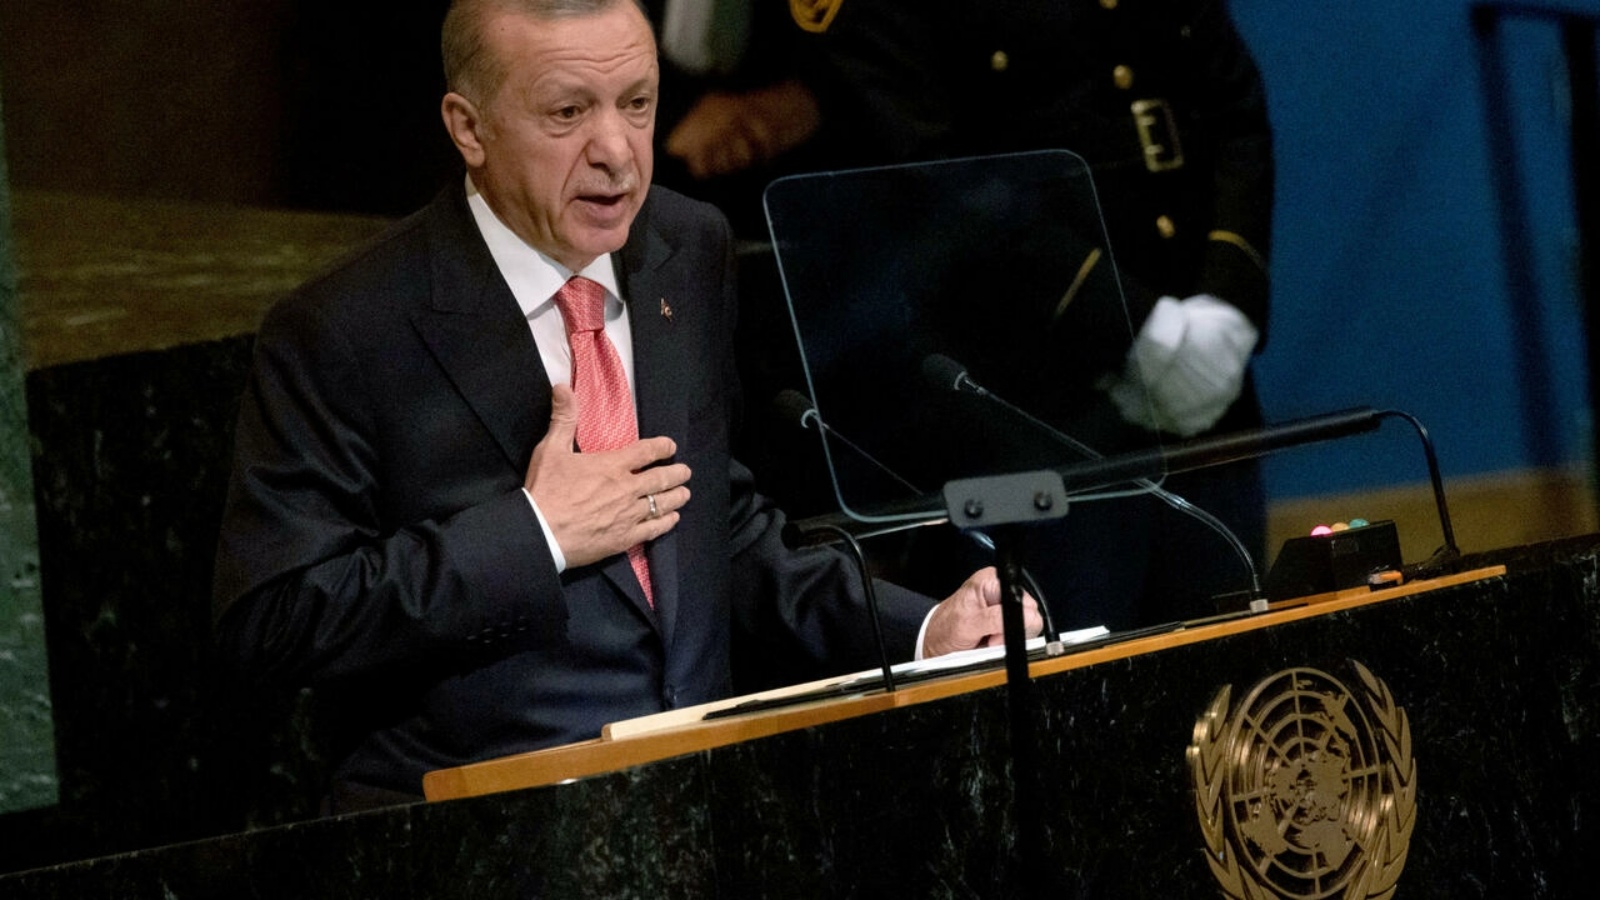 الرئيس التركي رجب طيب أردوغان يلقي كلمة أمام الدورة السابعة والسبعين للجمعية العامة للأمم المتحدة